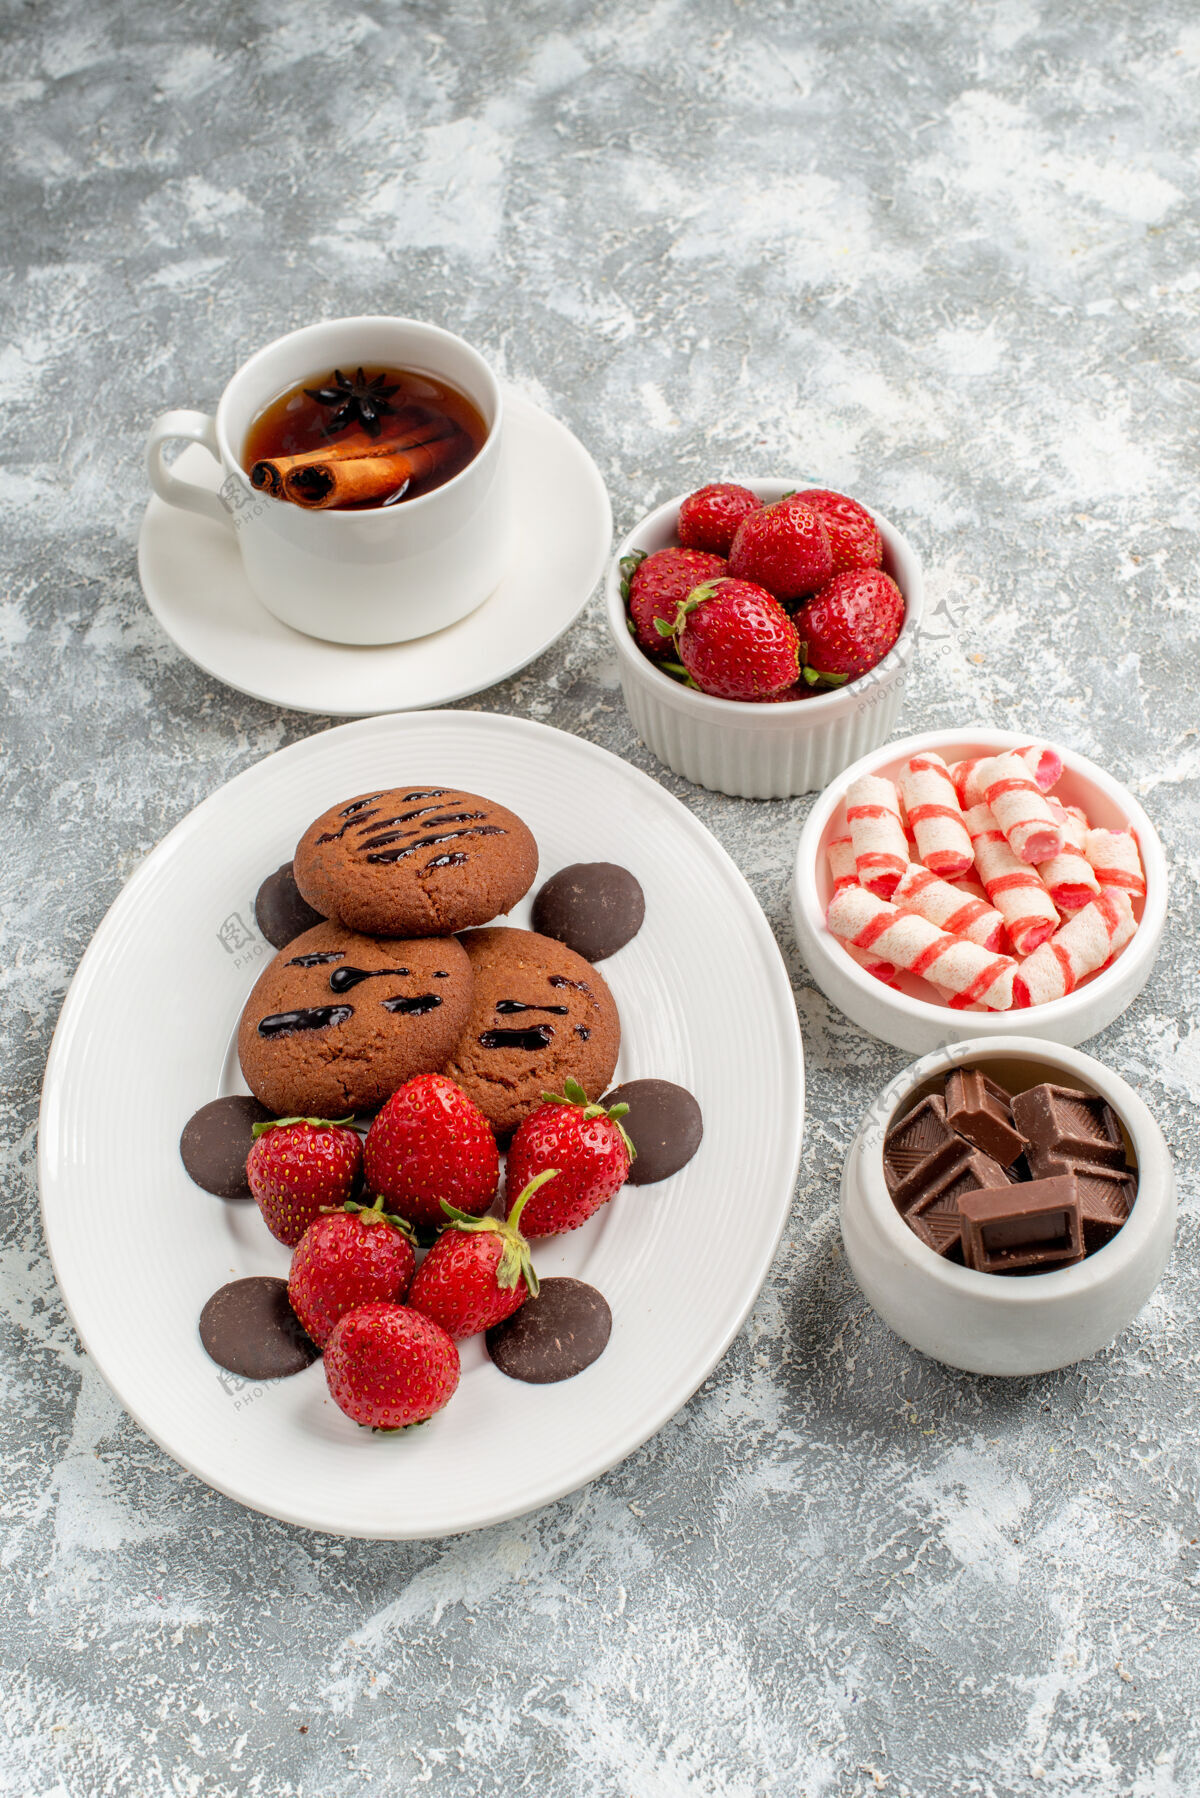 水果俯瞰饼干草莓和圆形巧克力放在椭圆形的盘子里一碗碗糖果草莓巧克力和肉桂茶放在灰白色的桌子上餐浆果巧克力